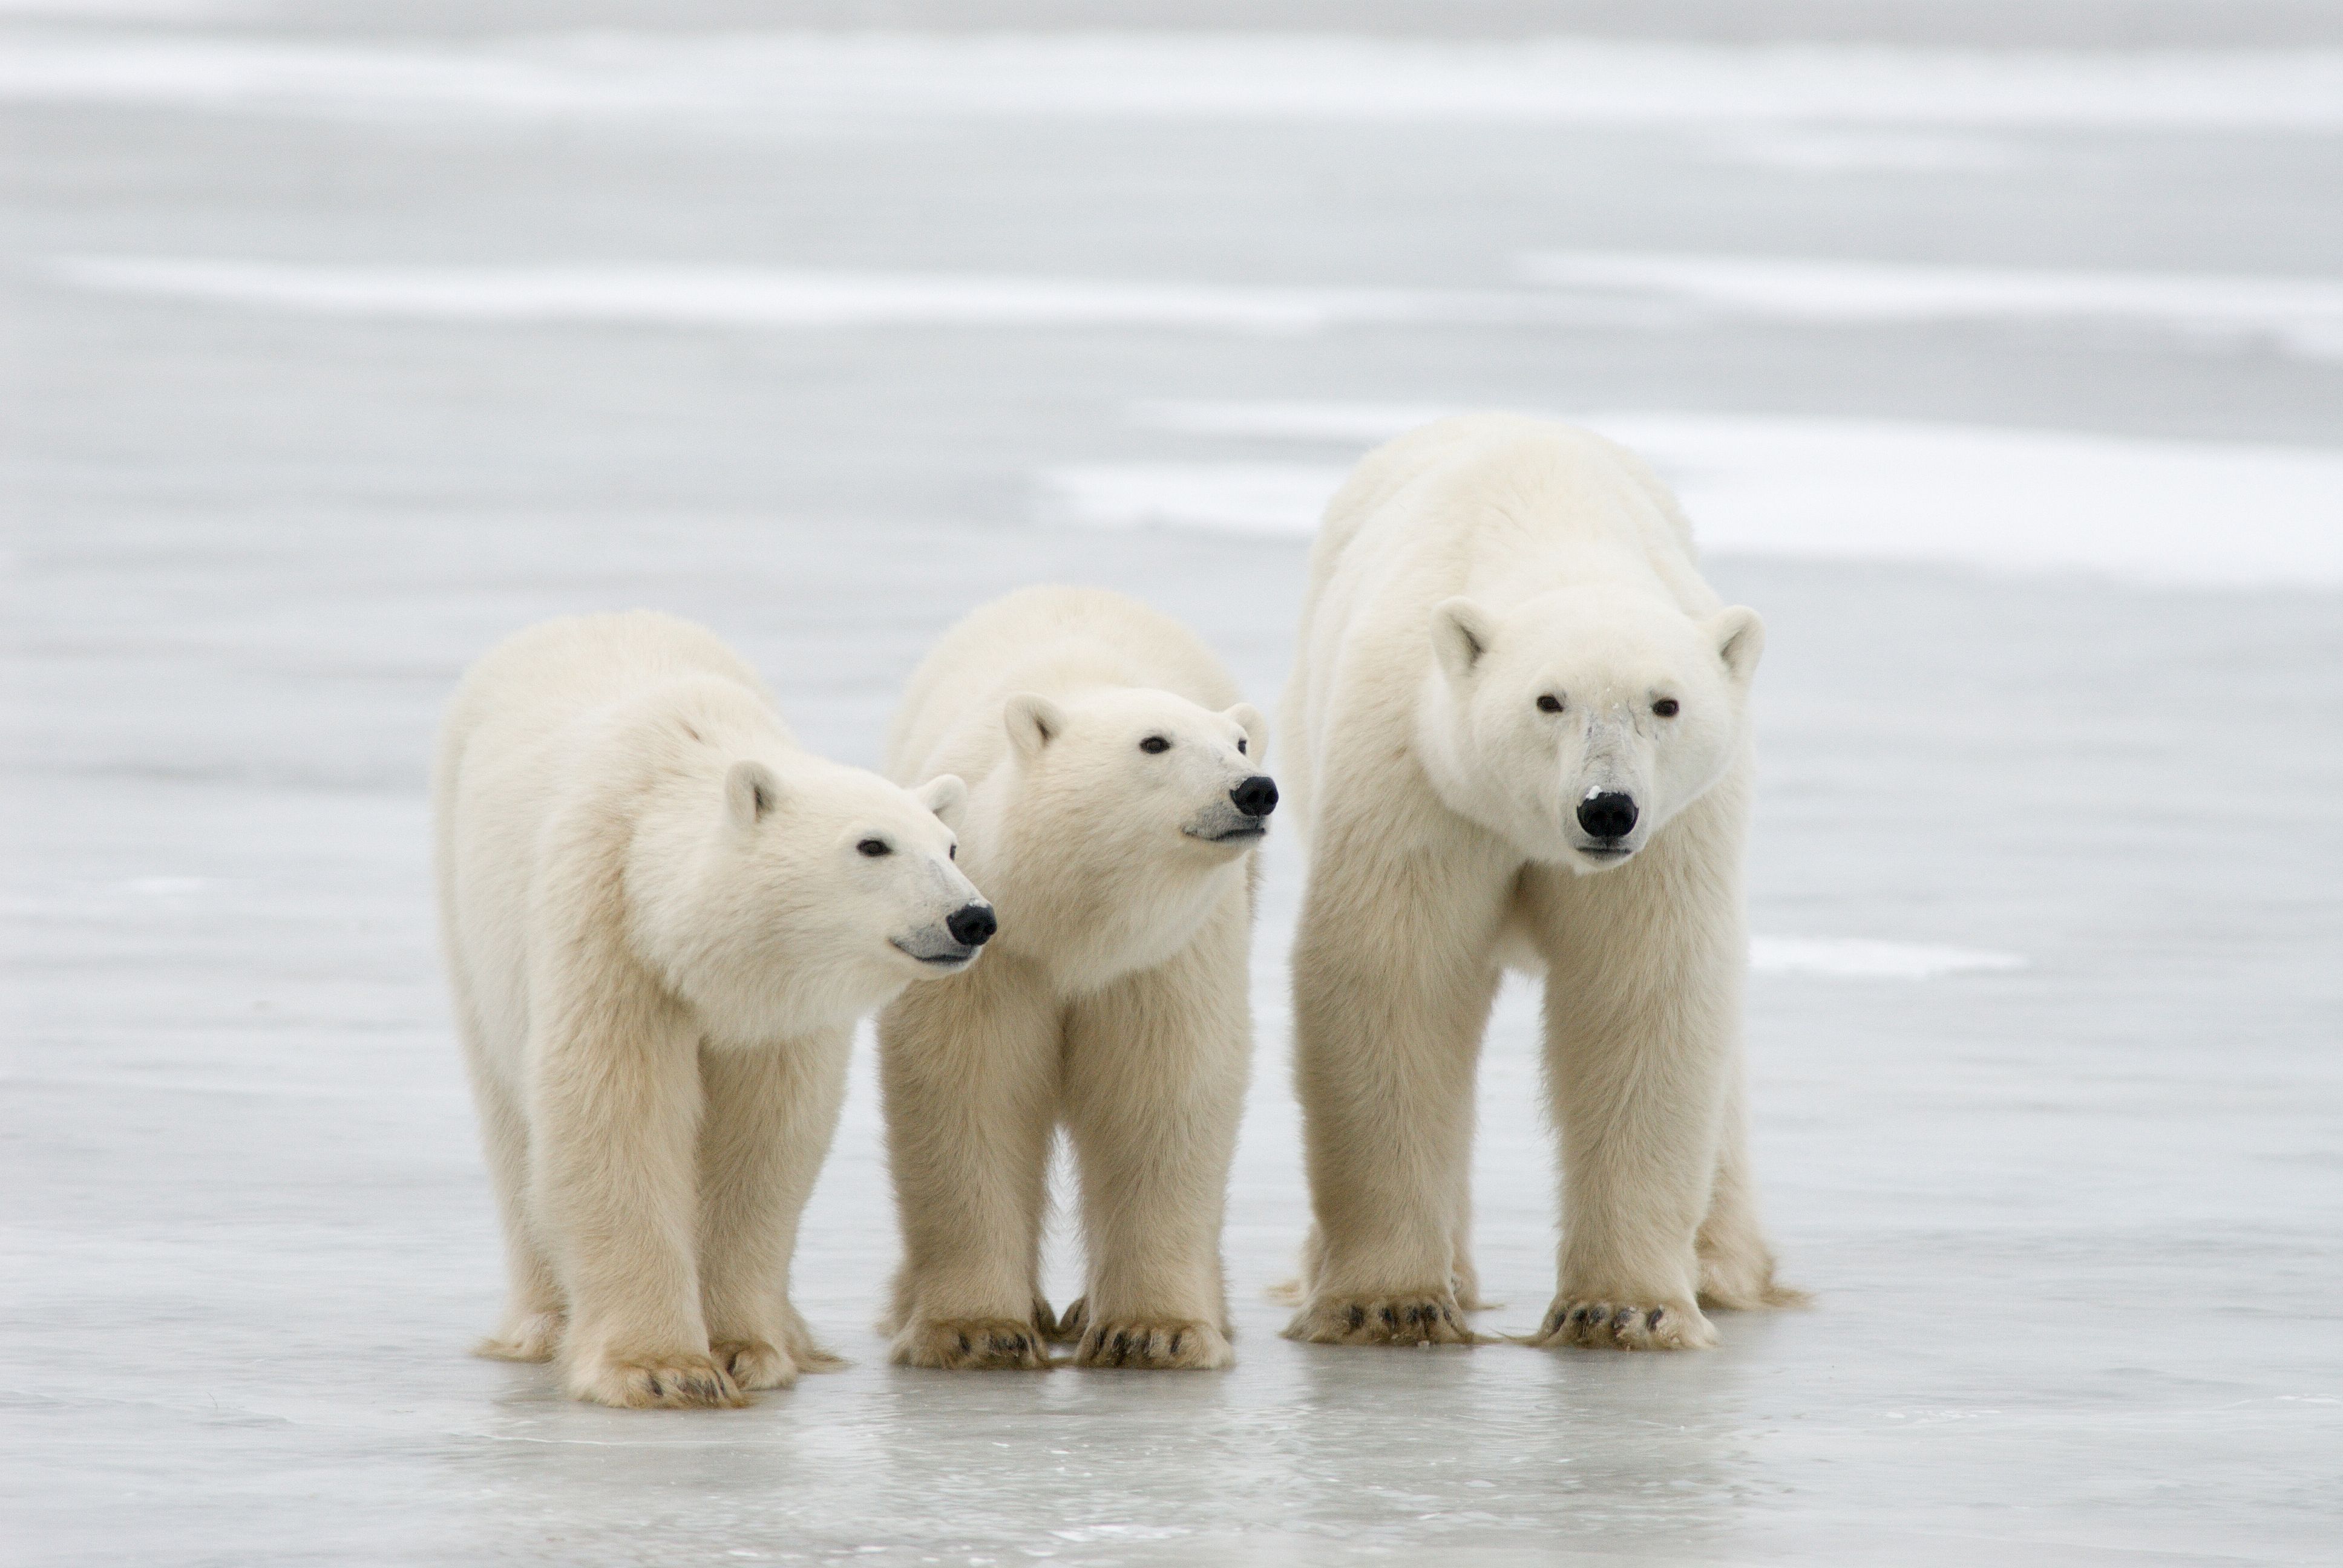 El calentamiento global podría llevar a la extinción de los osos polares, según estudio. (Foto Prensa Libre: AFP)